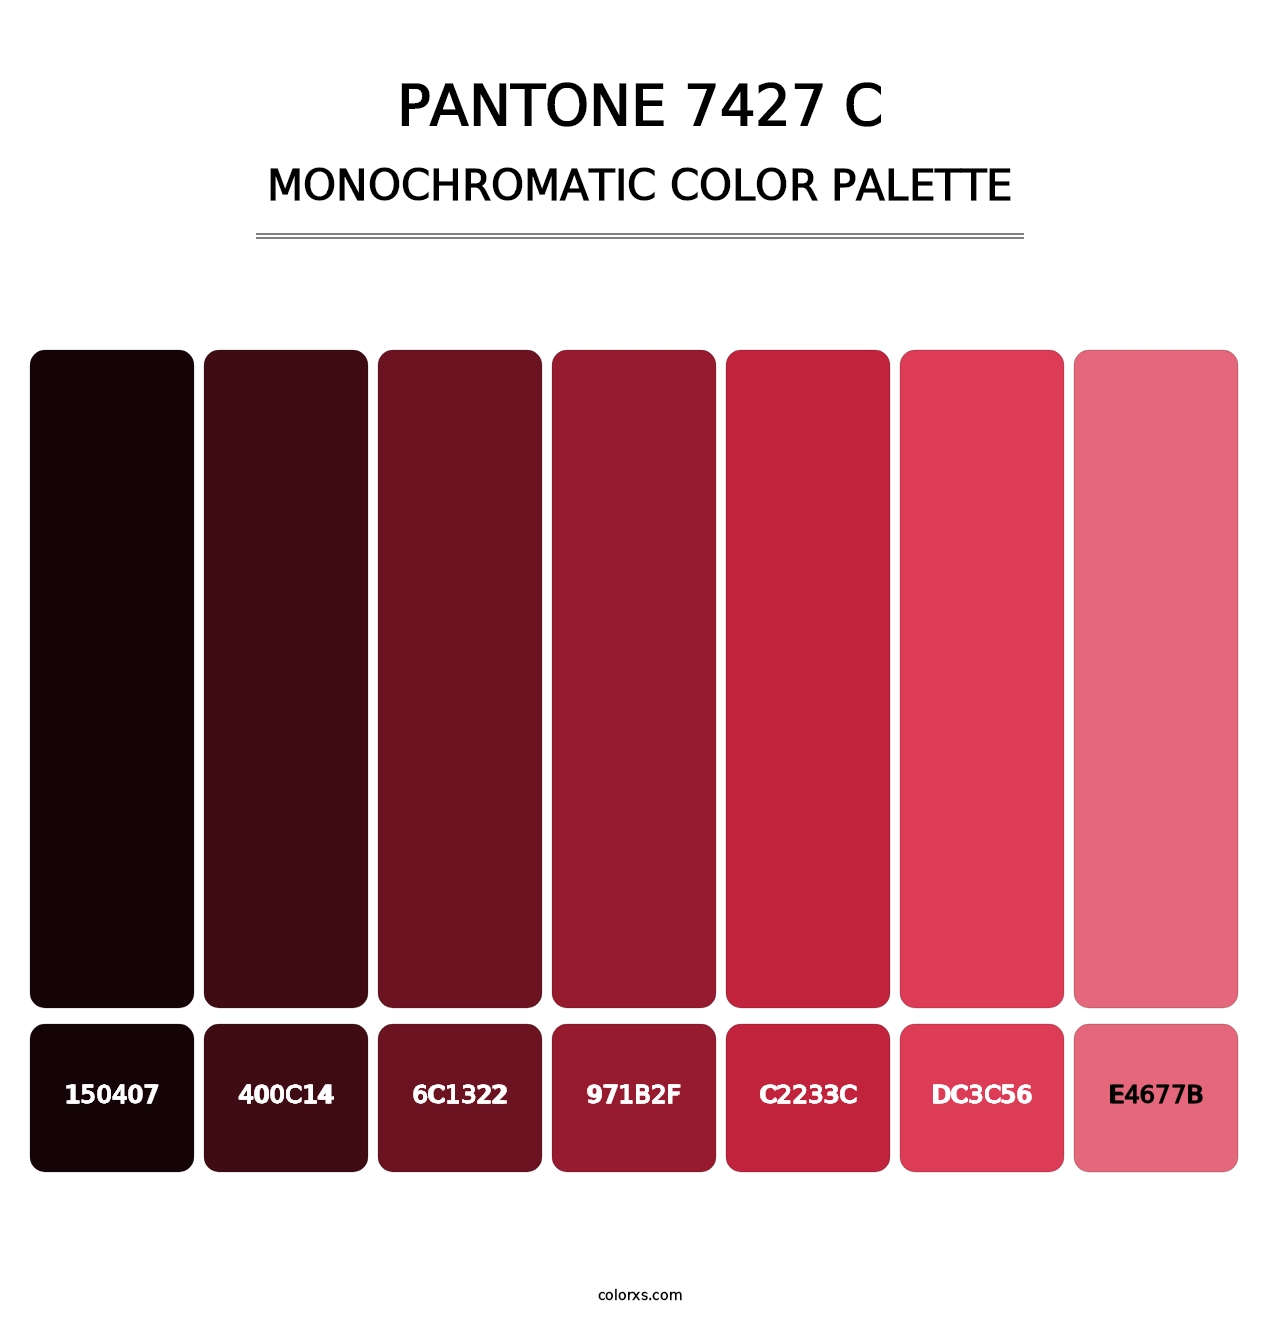 PANTONE 7427 C - Monochromatic Color Palette